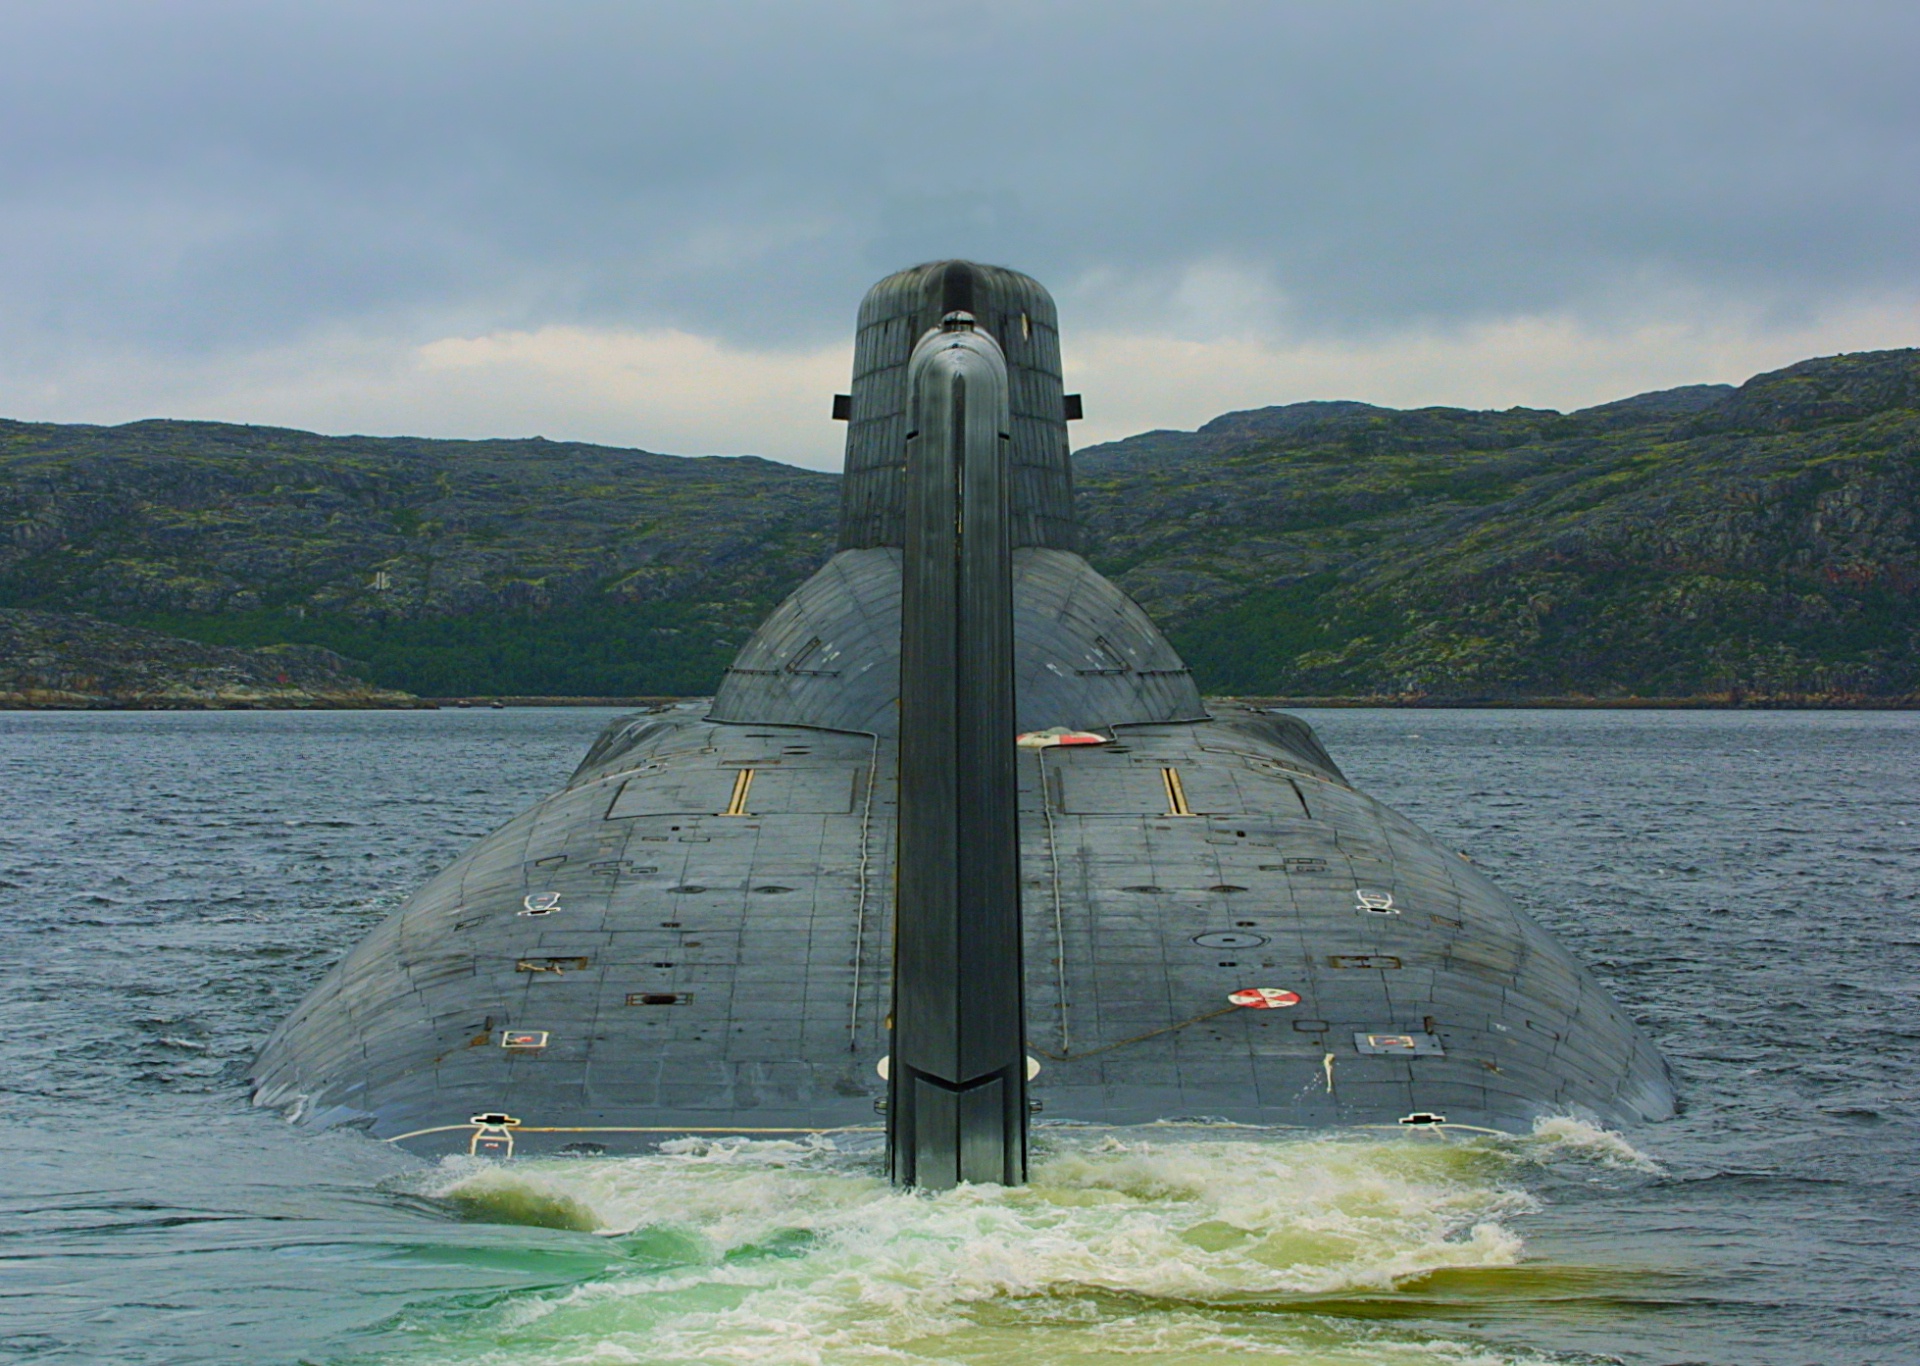 Класса тайфун. Подводная лодка акула проект 941. Одводные лодки проекта 941 «акула». Подводная лодка акула Тайфун. Самая большая подводная лодка акула.